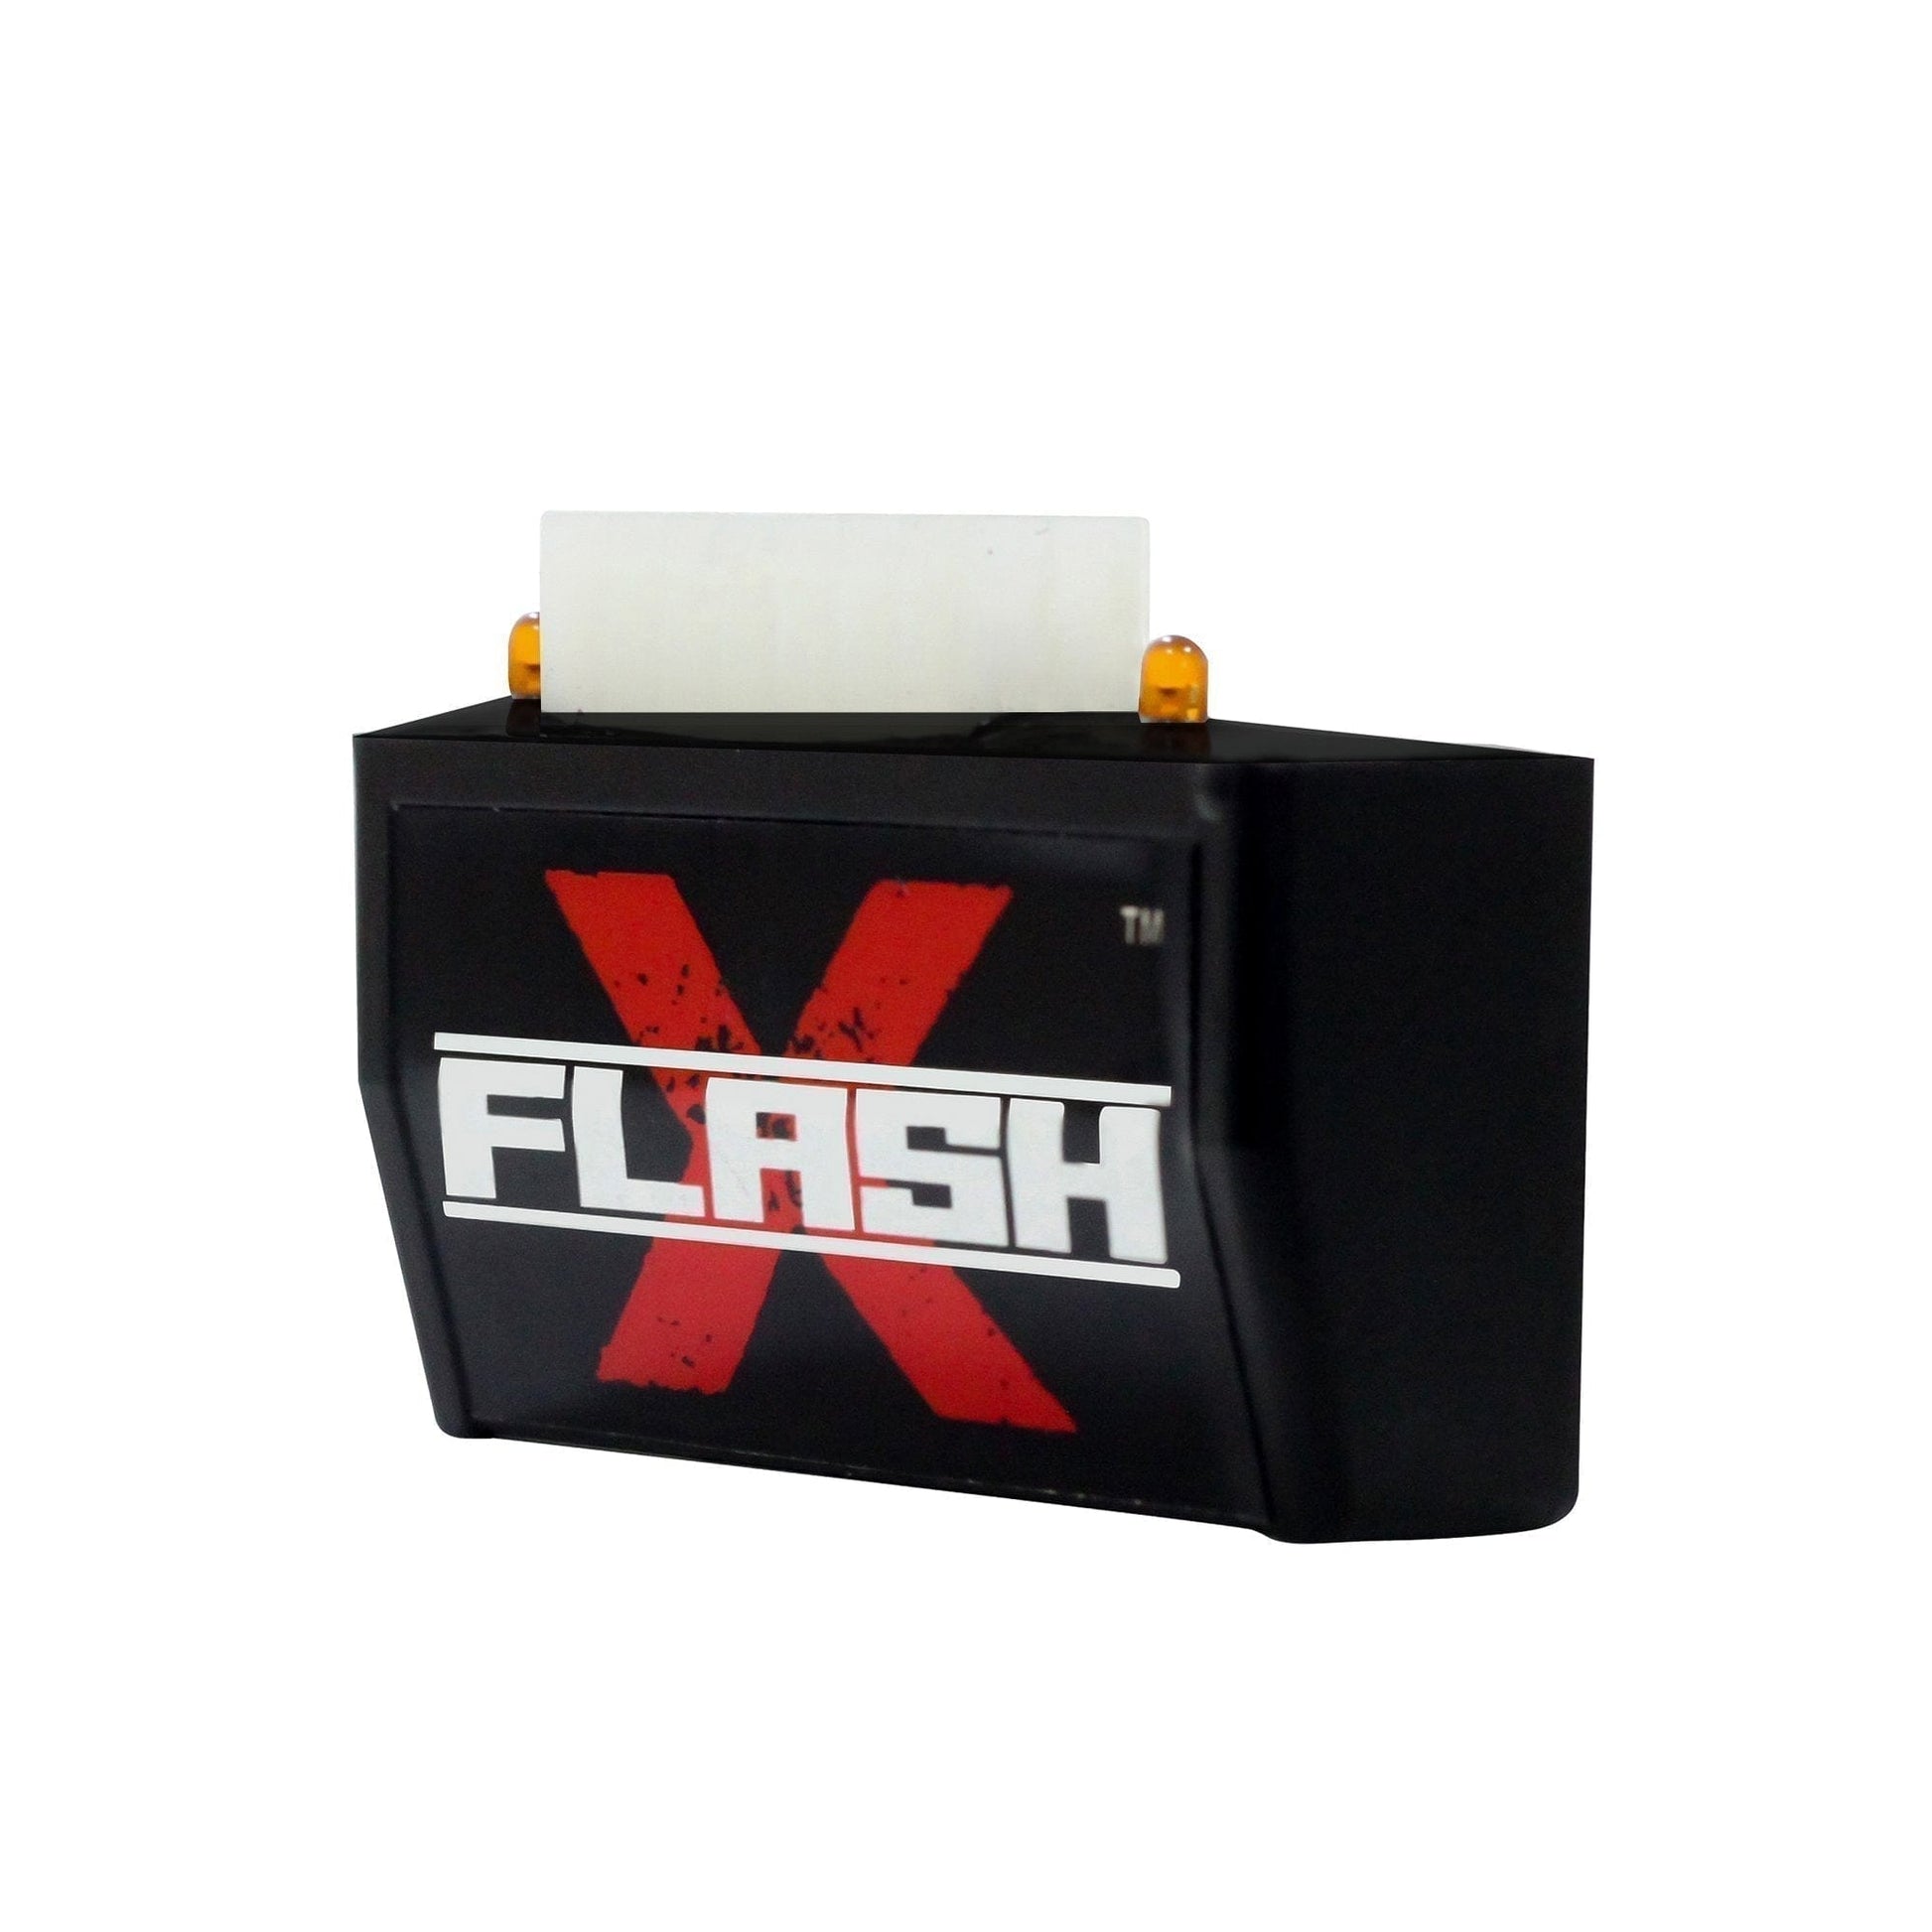 Destination Moto YAMAHA R3 Flash X Hazard Lights Flash Module, Blinker,Flasher